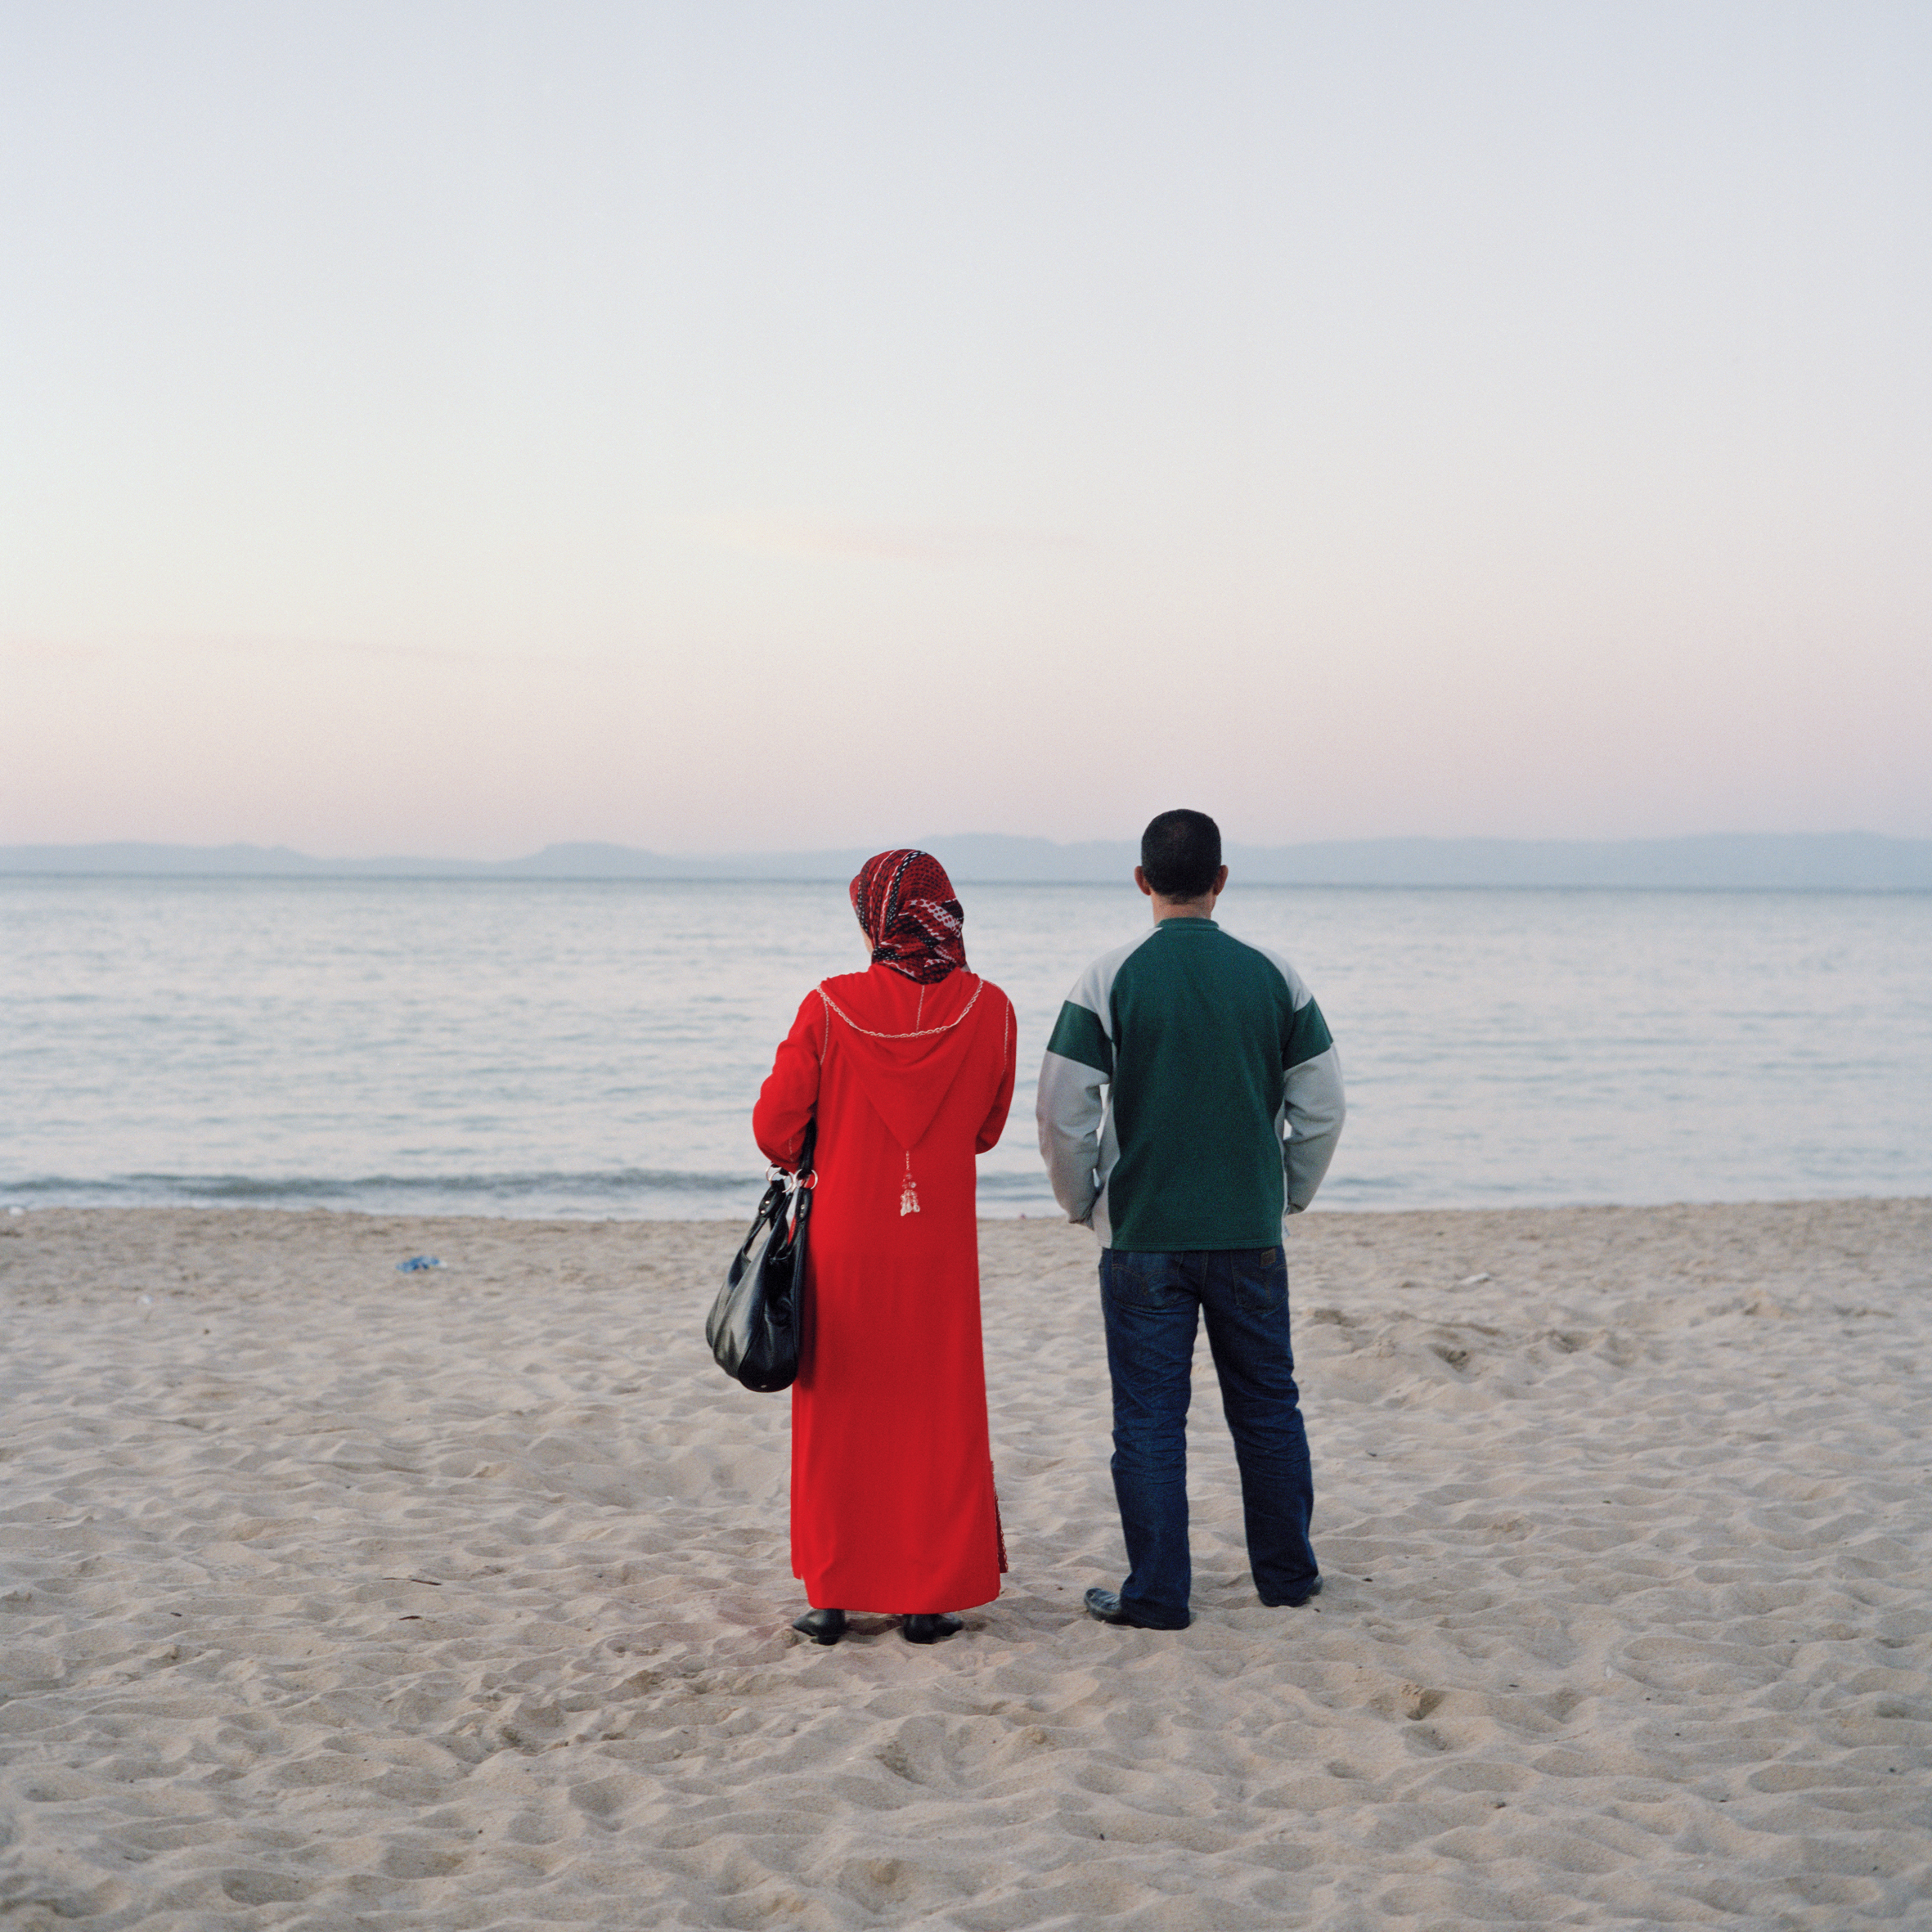 La première Biennale des photographes du monde arabe contemporain “démonte” les clichés